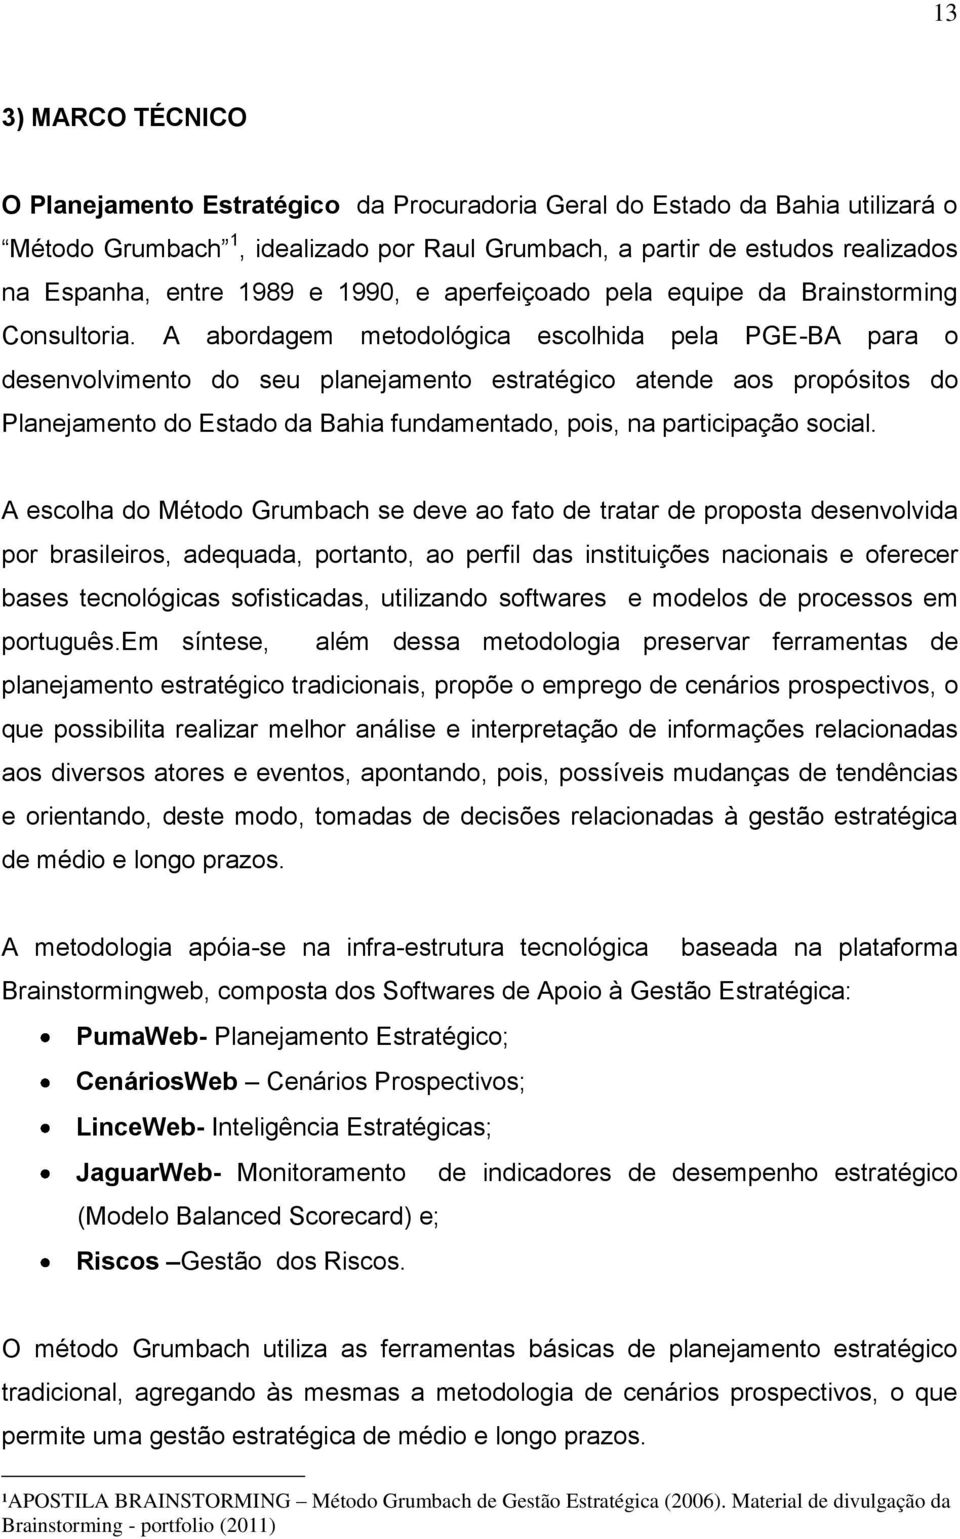 A abordagem metodológica escolhida pela PGE-BA para o desenvolvimento do seu planejamento estratégico atende aos propósitos do Planejamento do Estado da Bahia fundamentado, pois, na participação